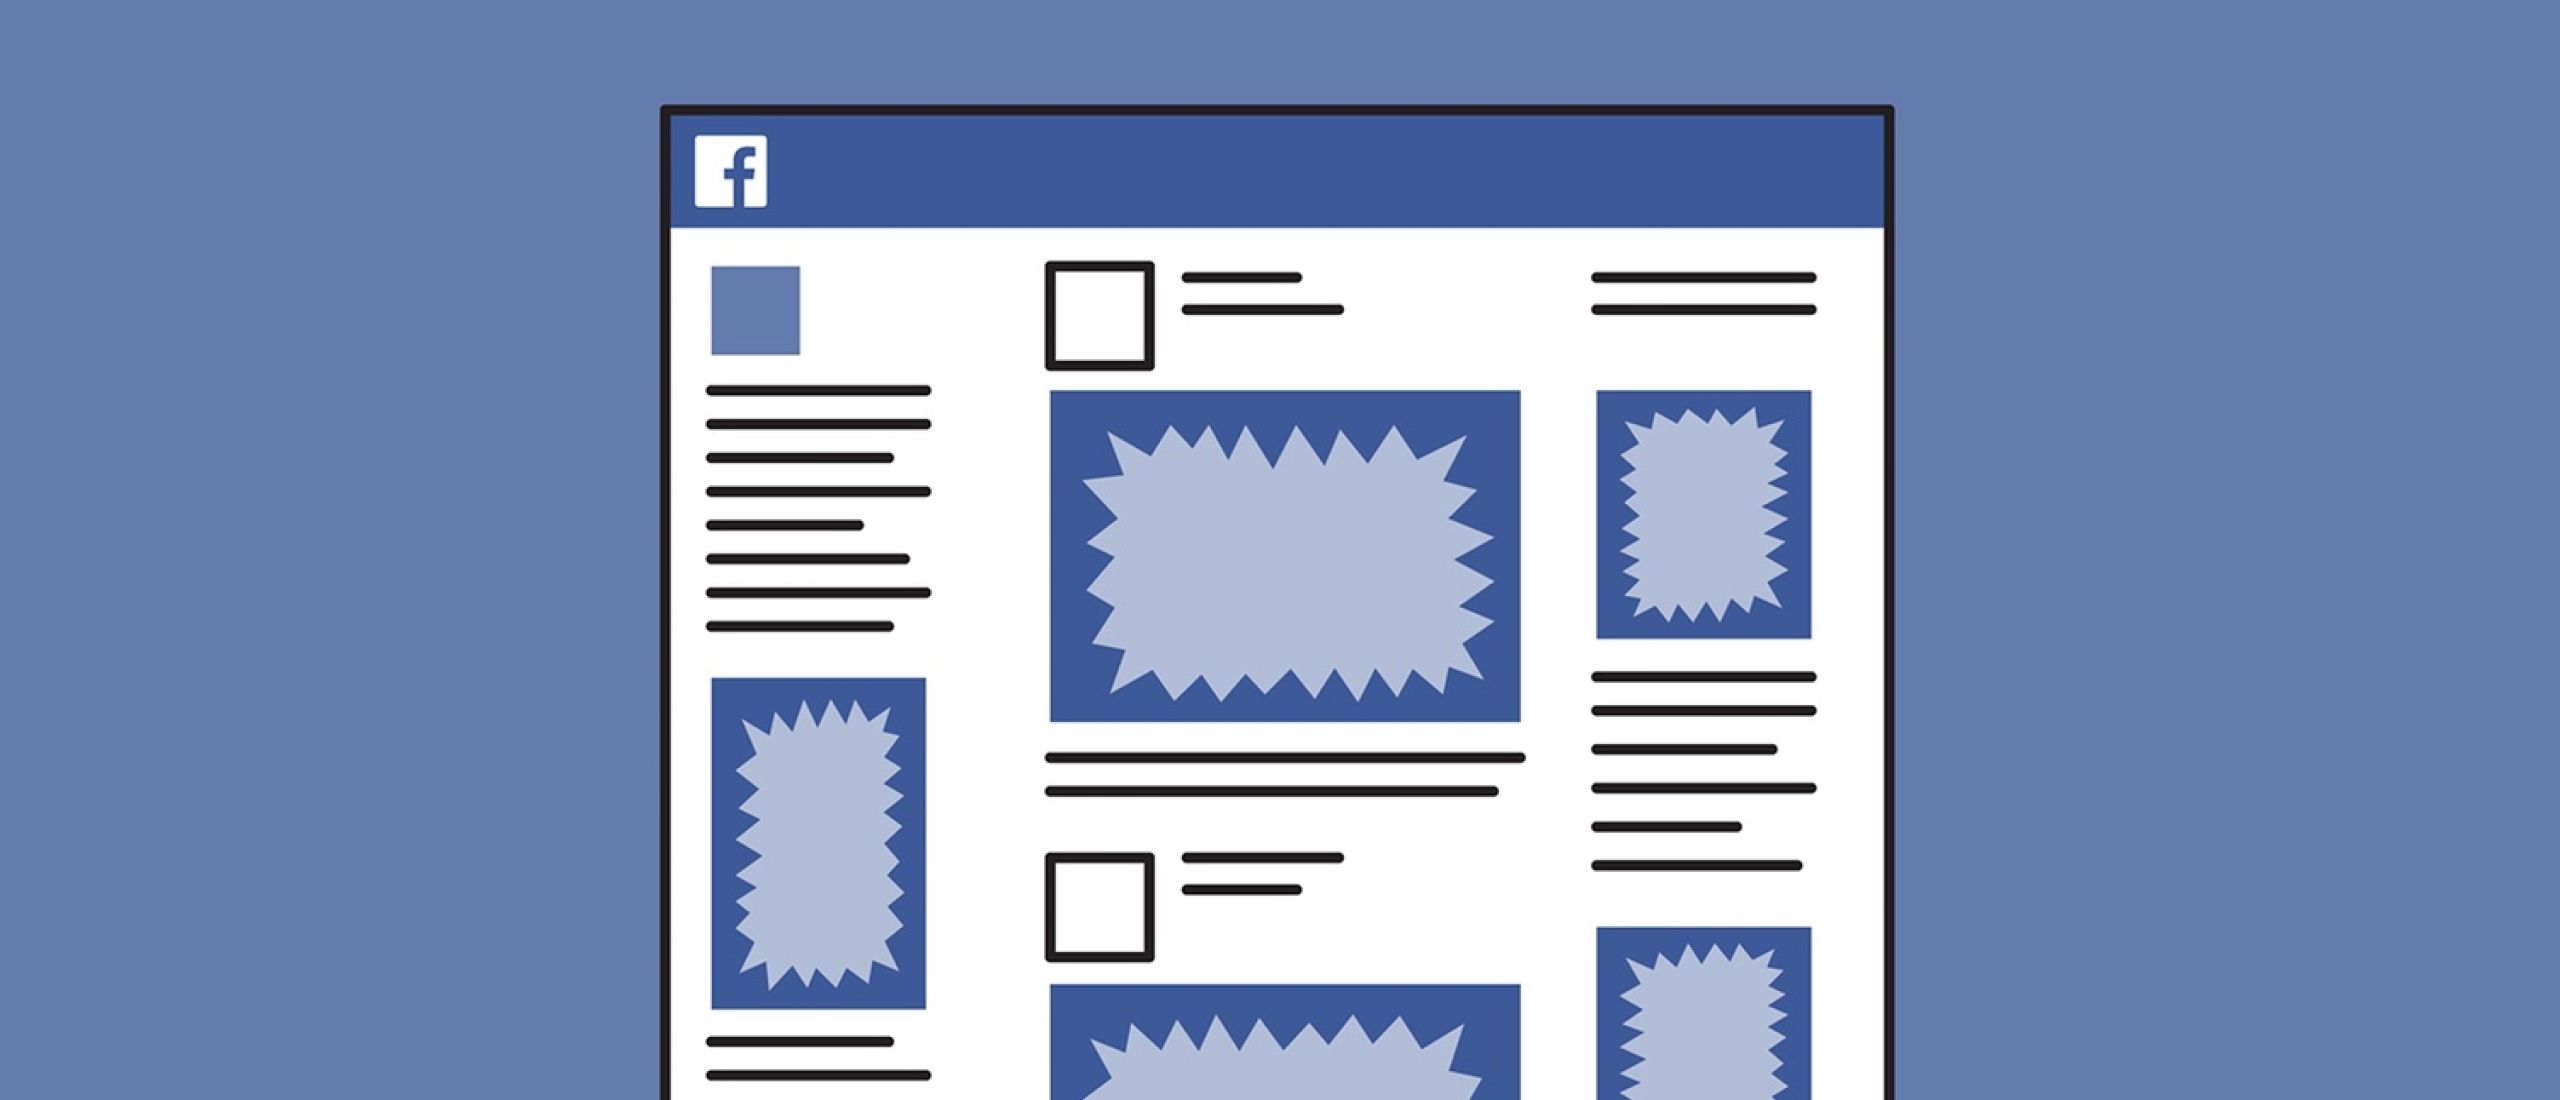 facebook ads leads, hoe werkt het?